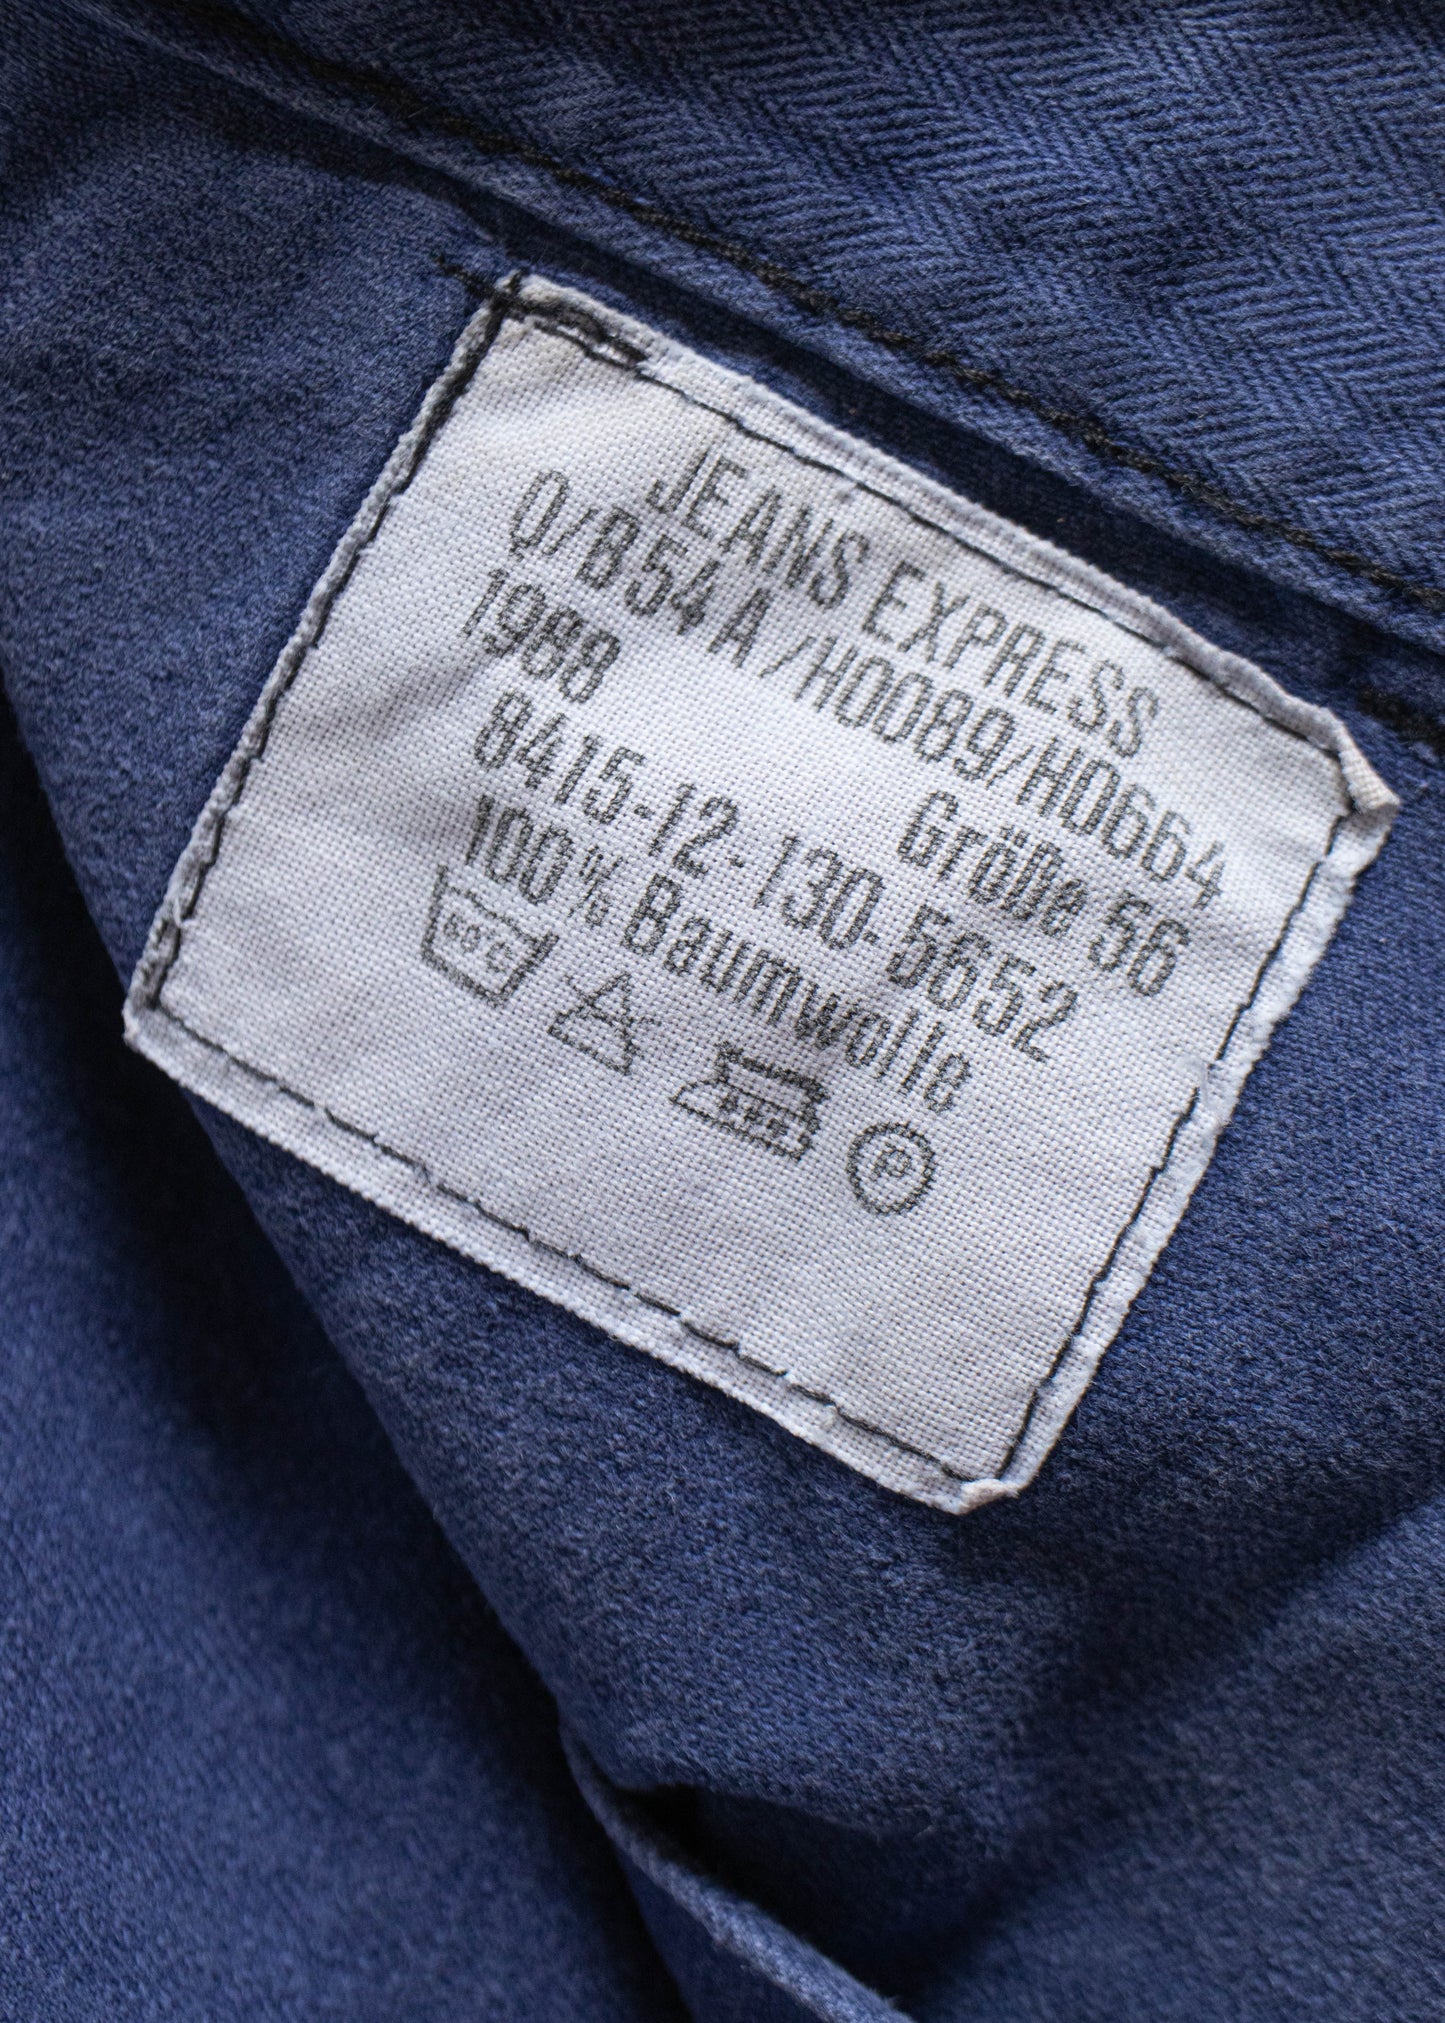 Vintage 1980s HTB Bleu de Travail European Workwear Pants Size Women's 33 Men's 36